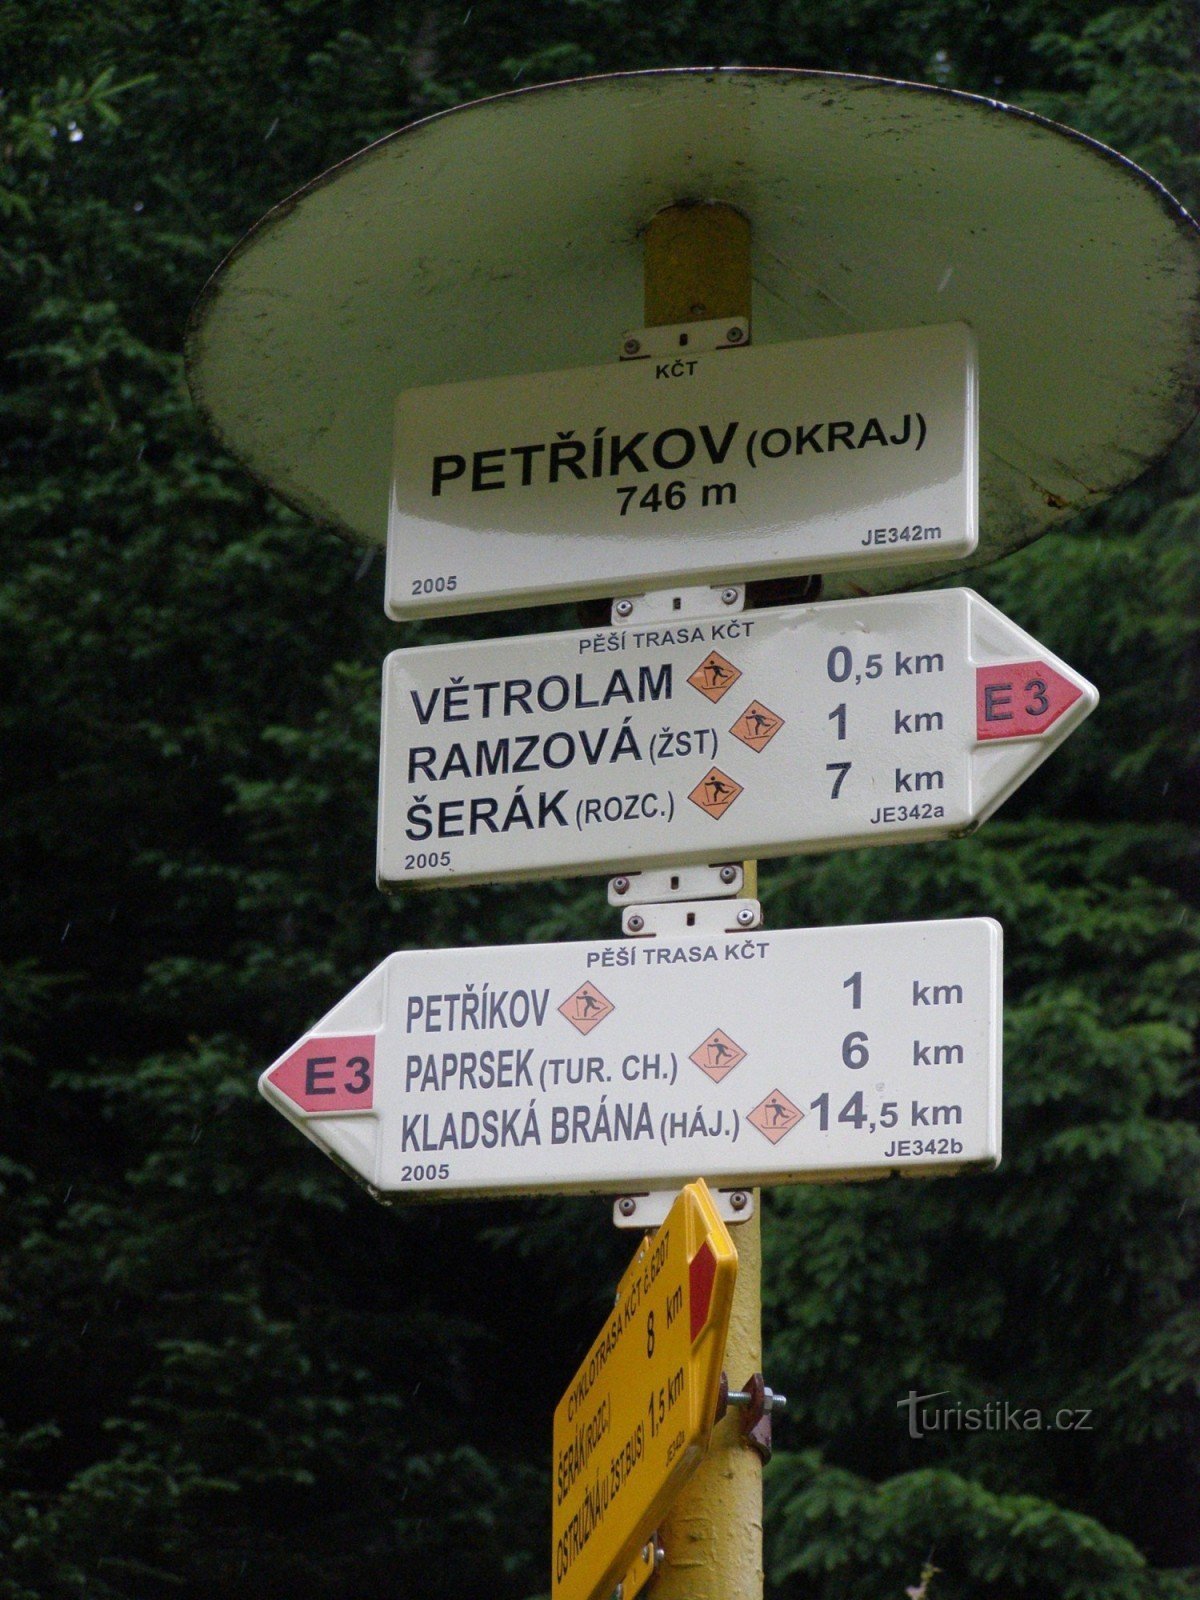 encrucijada turística Petříkov (afueras)